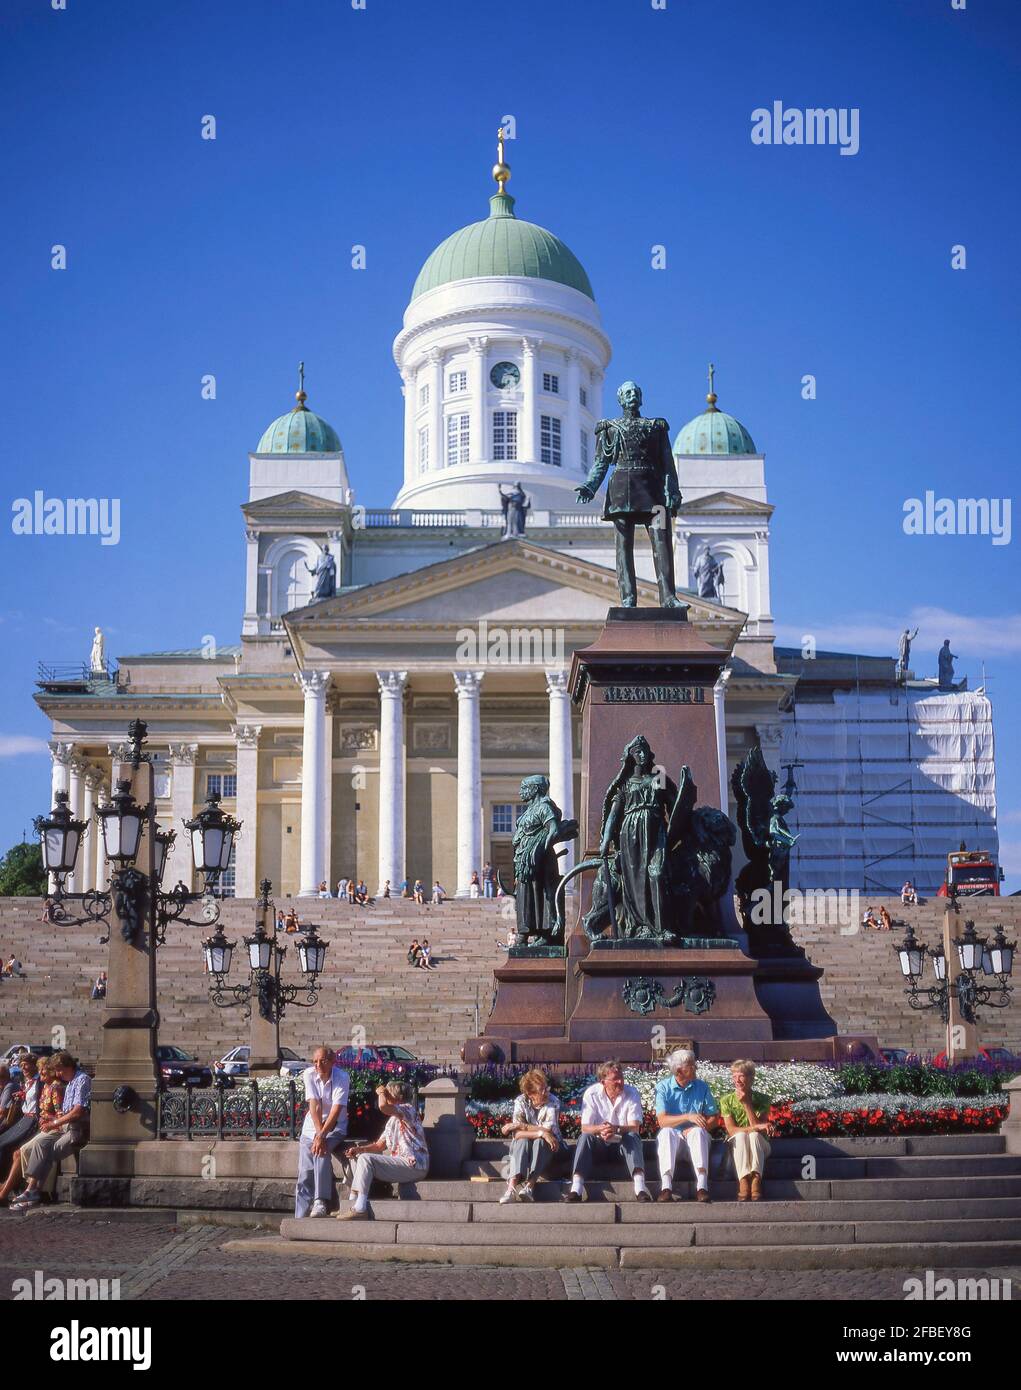 Lutherische Dom von Helsinki & Statue von Kaiser Alexander II, Senatsplatz, Region Uusimaa, Helsinki, Finnland Stockfoto